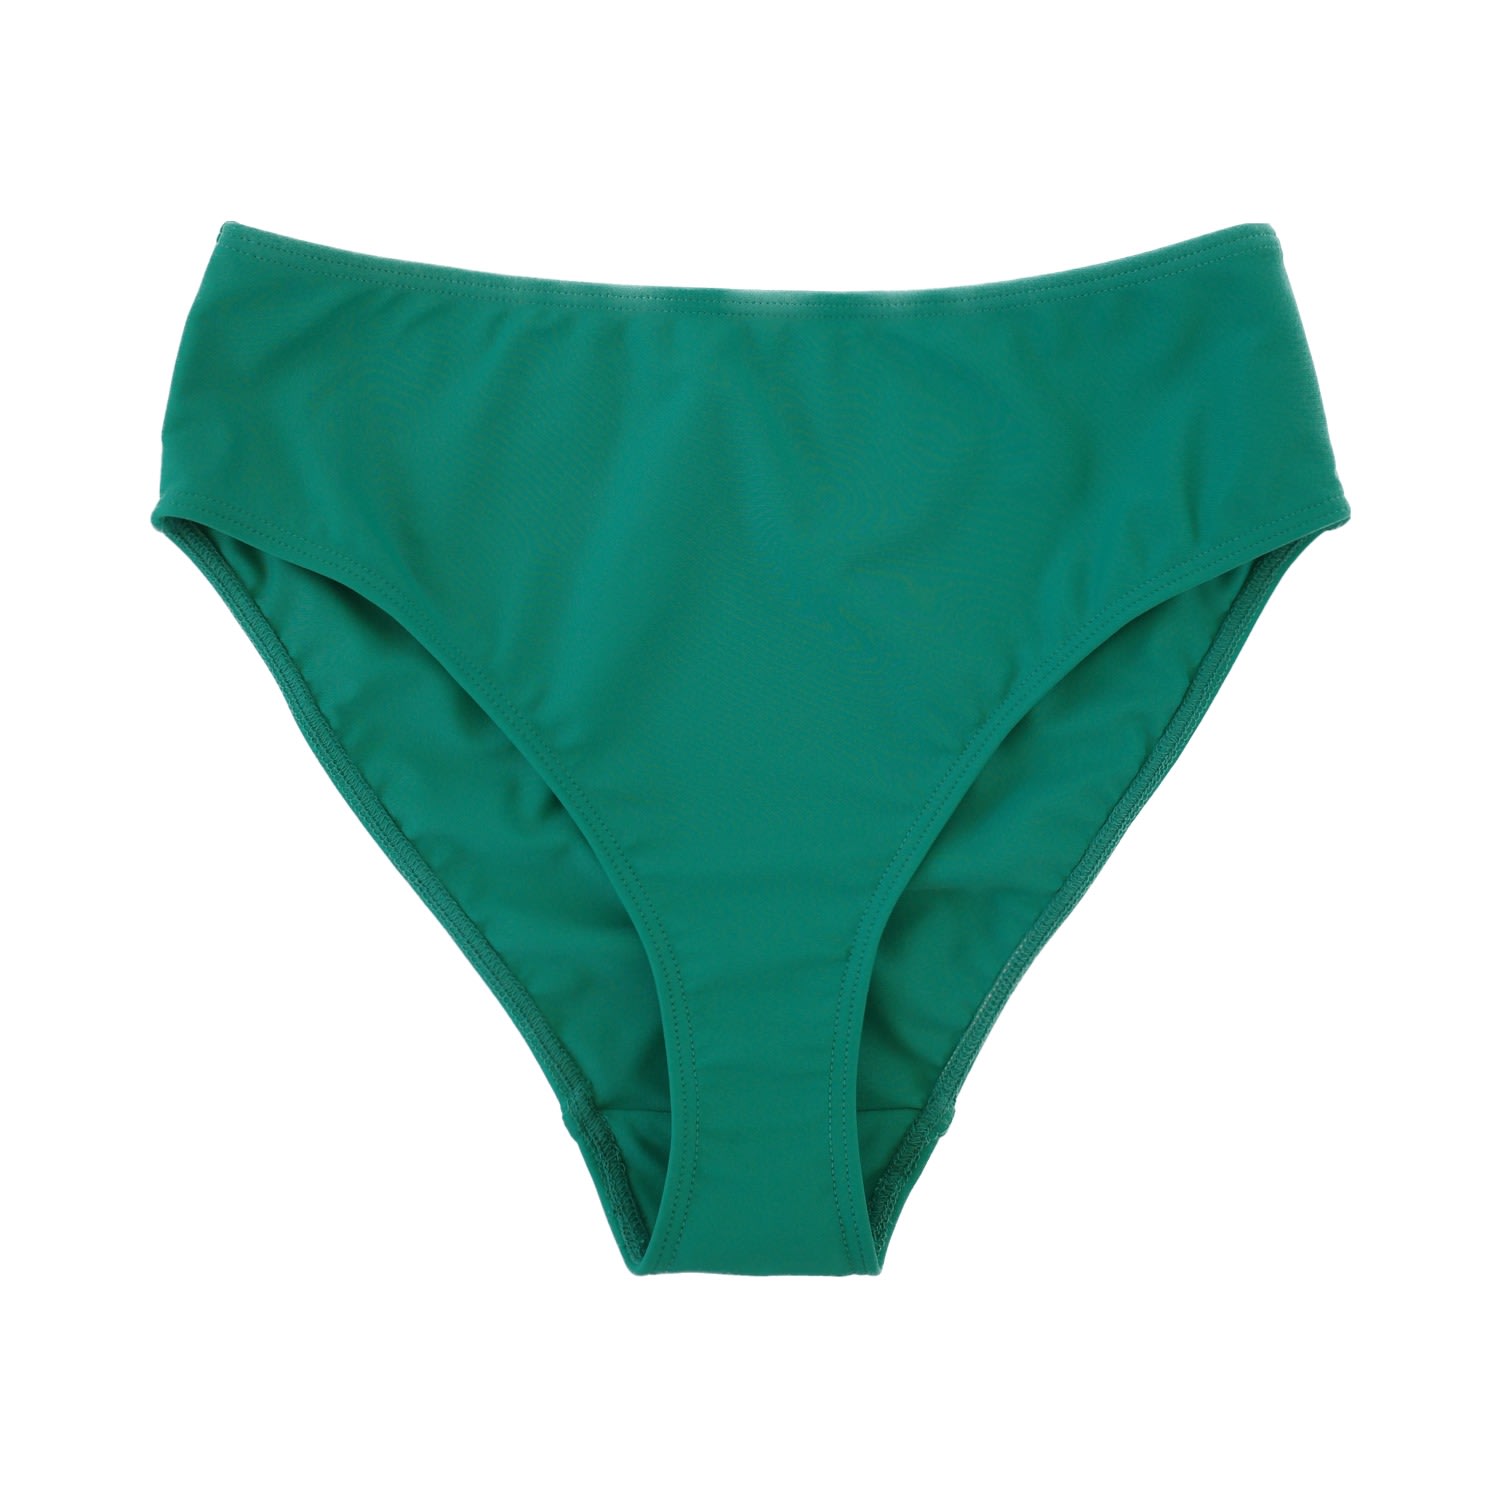 MIGA Swimwear - Alyssa High-Waisted Bikini Bottoms- Green